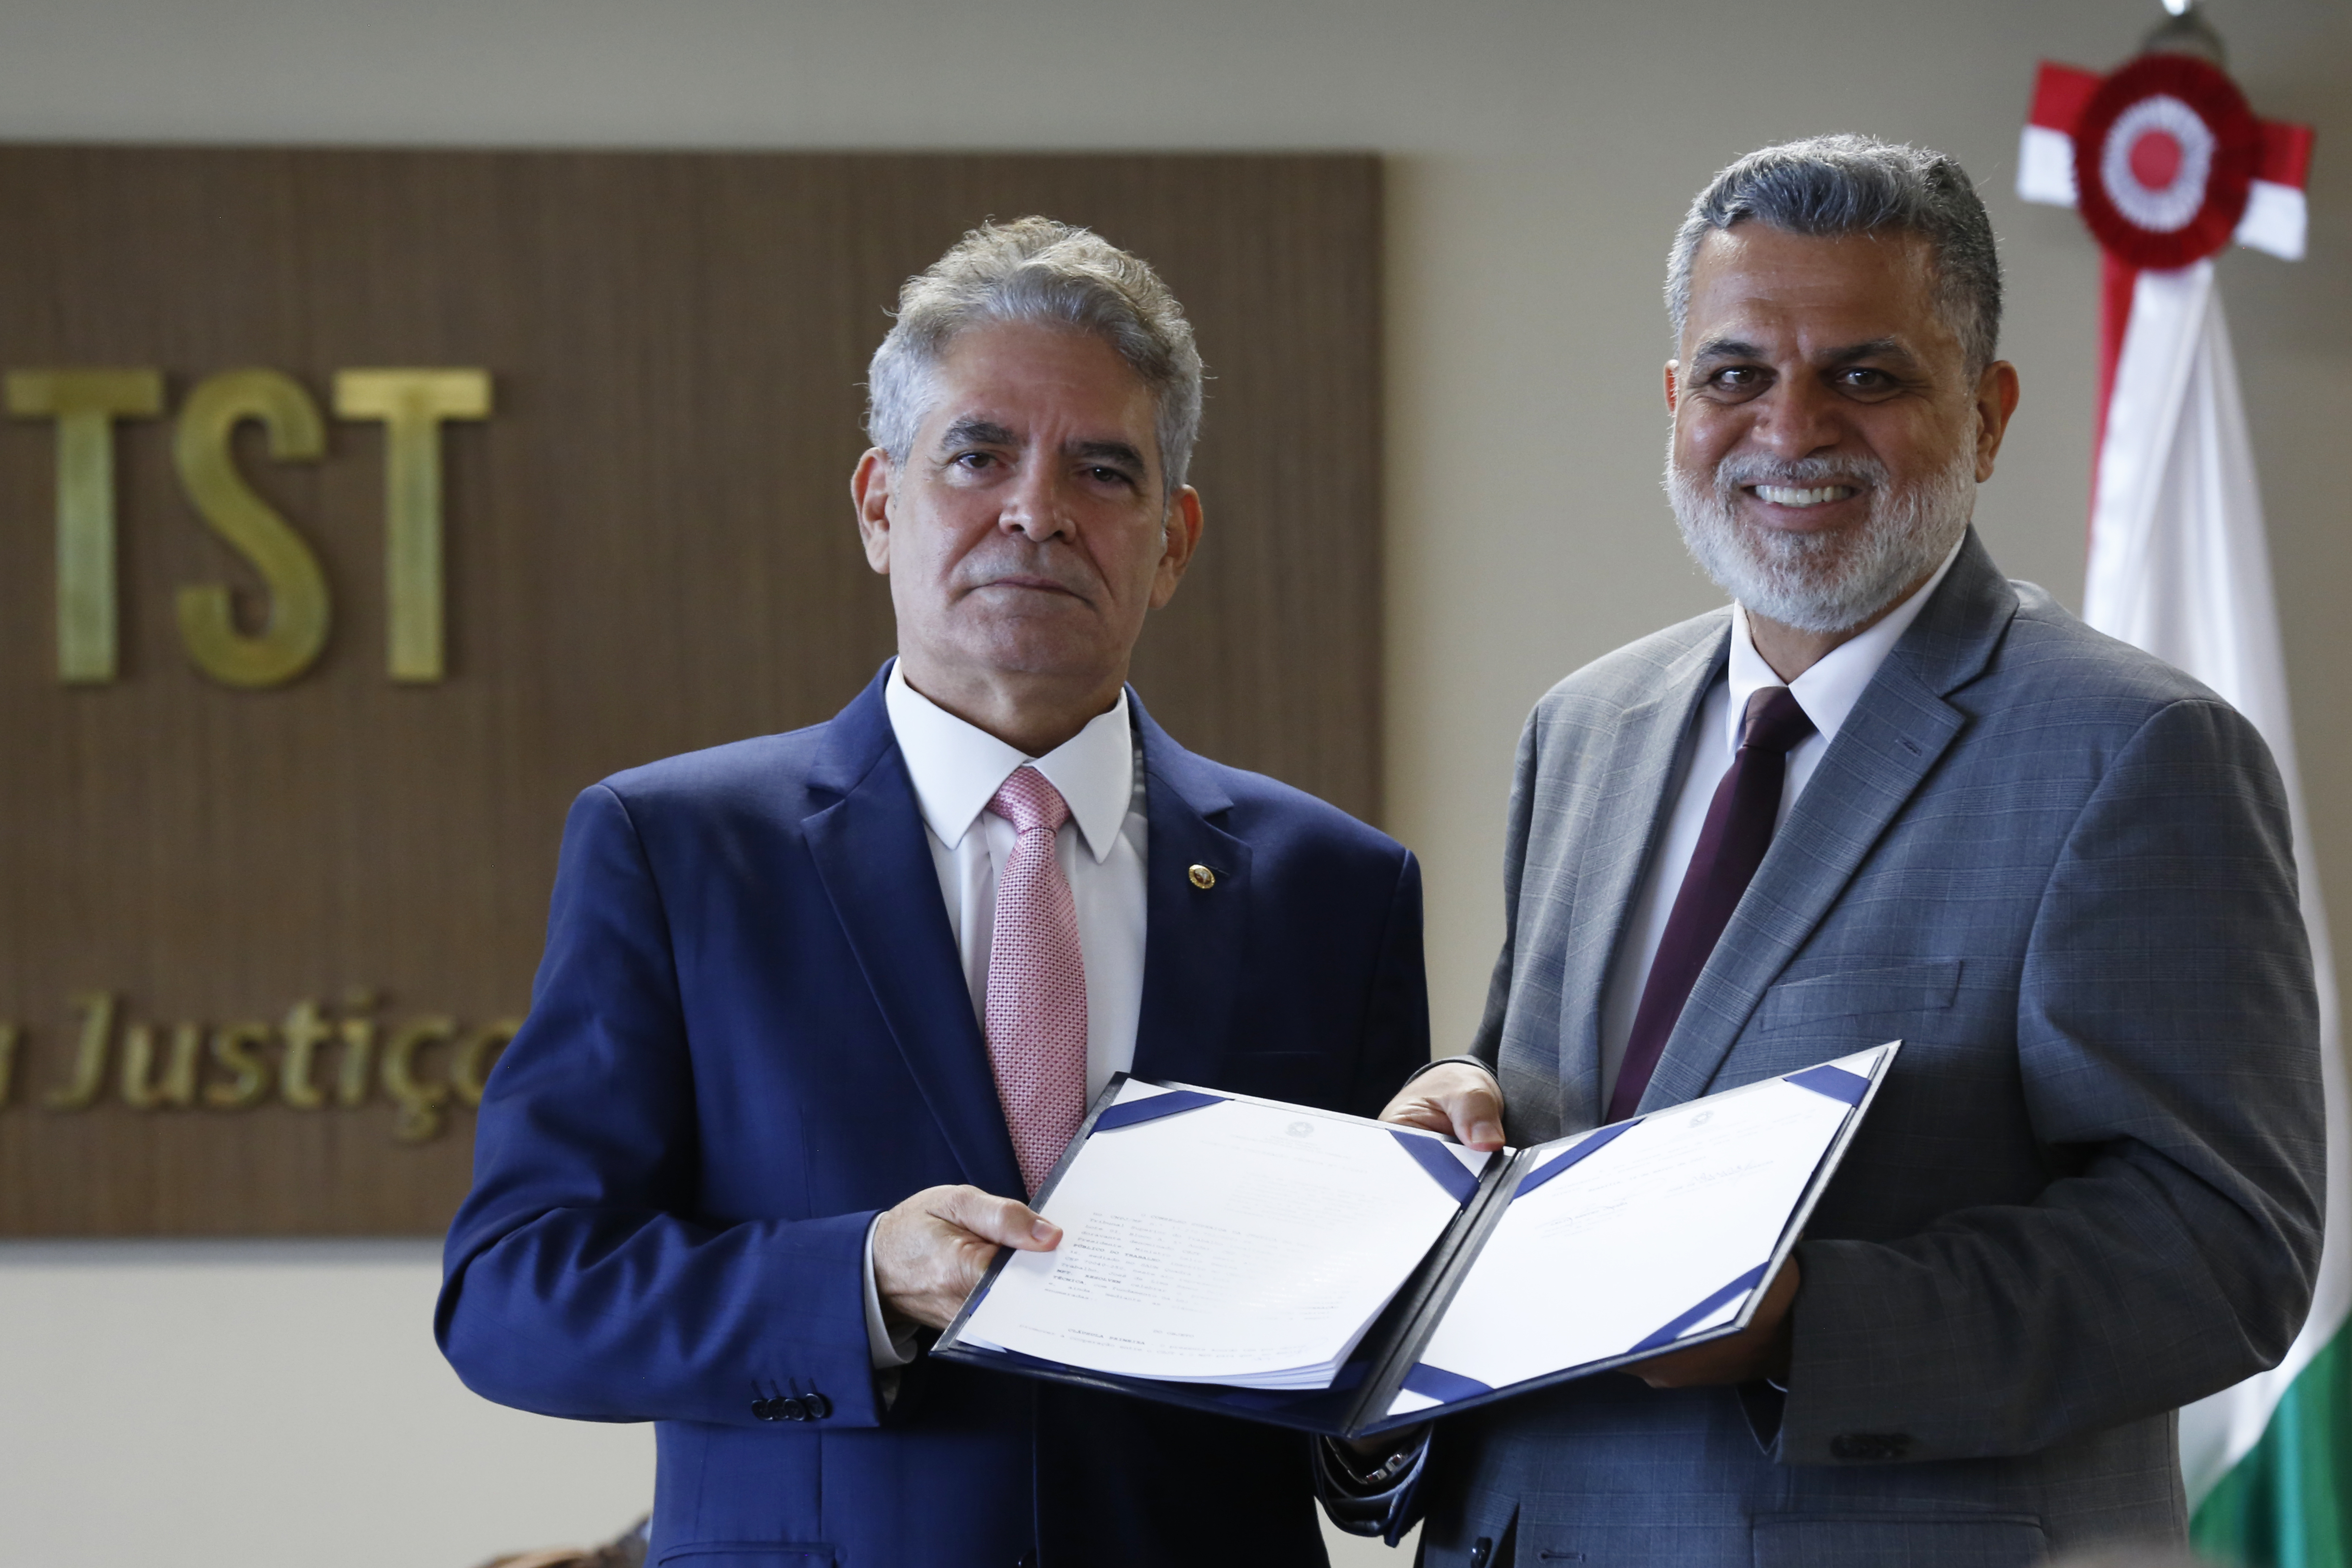 Ministro Lelio Bentes Corrêa (direita) e o procurador-geral do Trabalho, José de Lima Ramos Pereira (esquerda) com o acordo assinado. (Foto: Bárbara Cabral - Secom/TST)